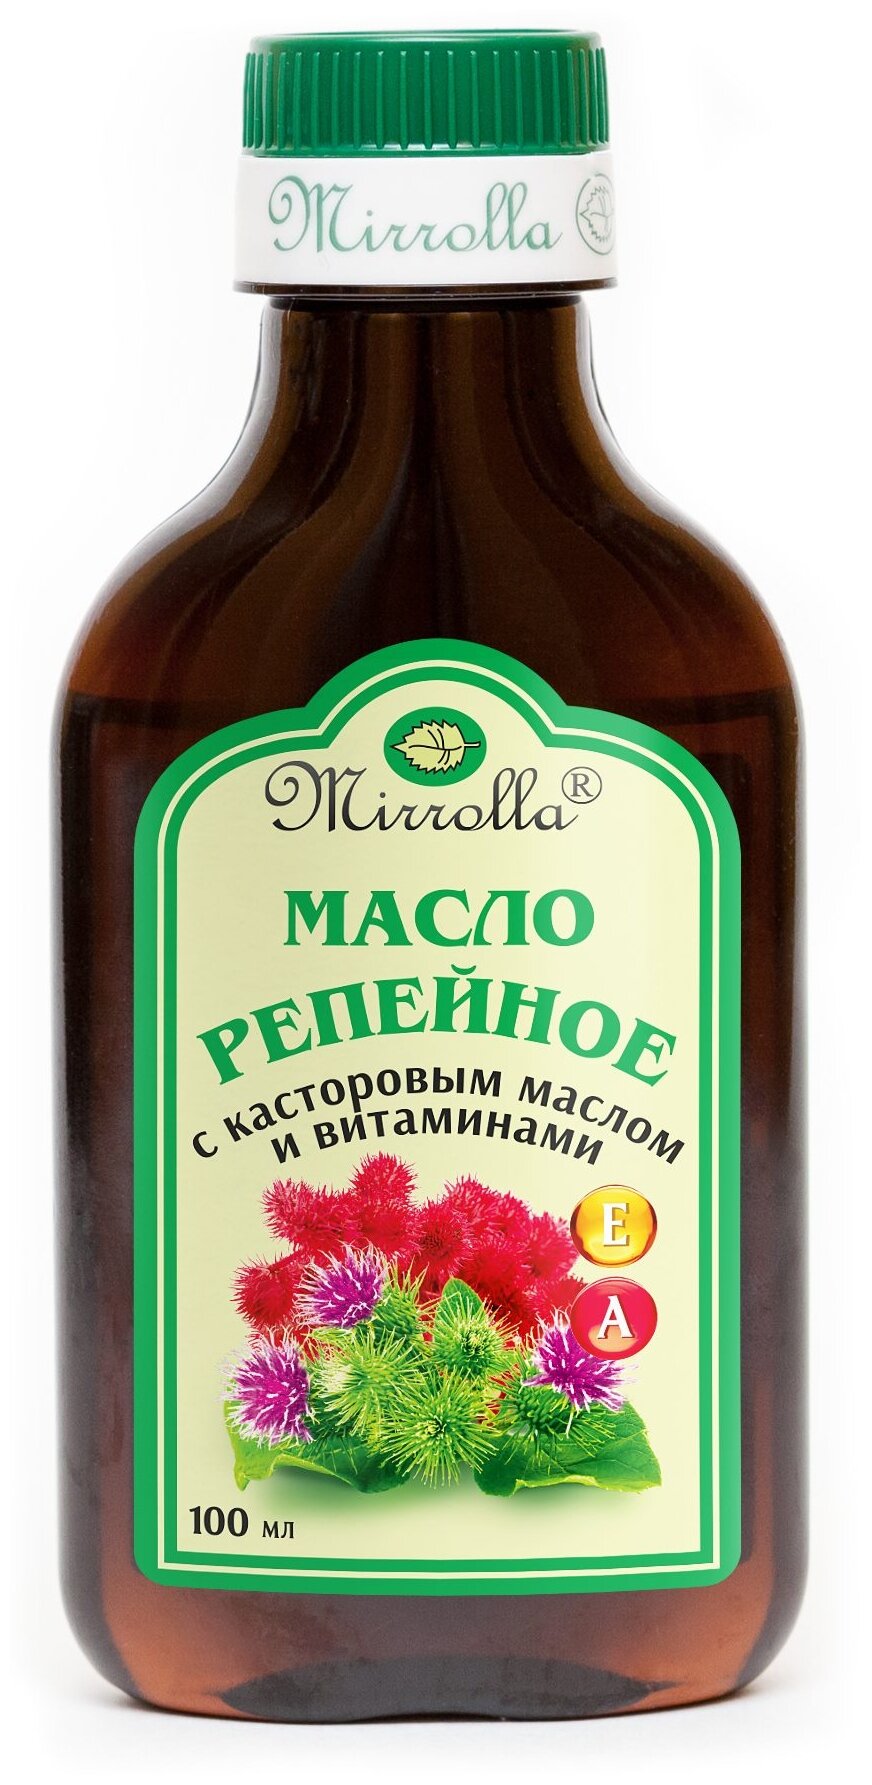 Mirrolla Репейное масло с касторовым маслом и витаминами А и Е 100 мл (Mirrolla, ) - фото №1